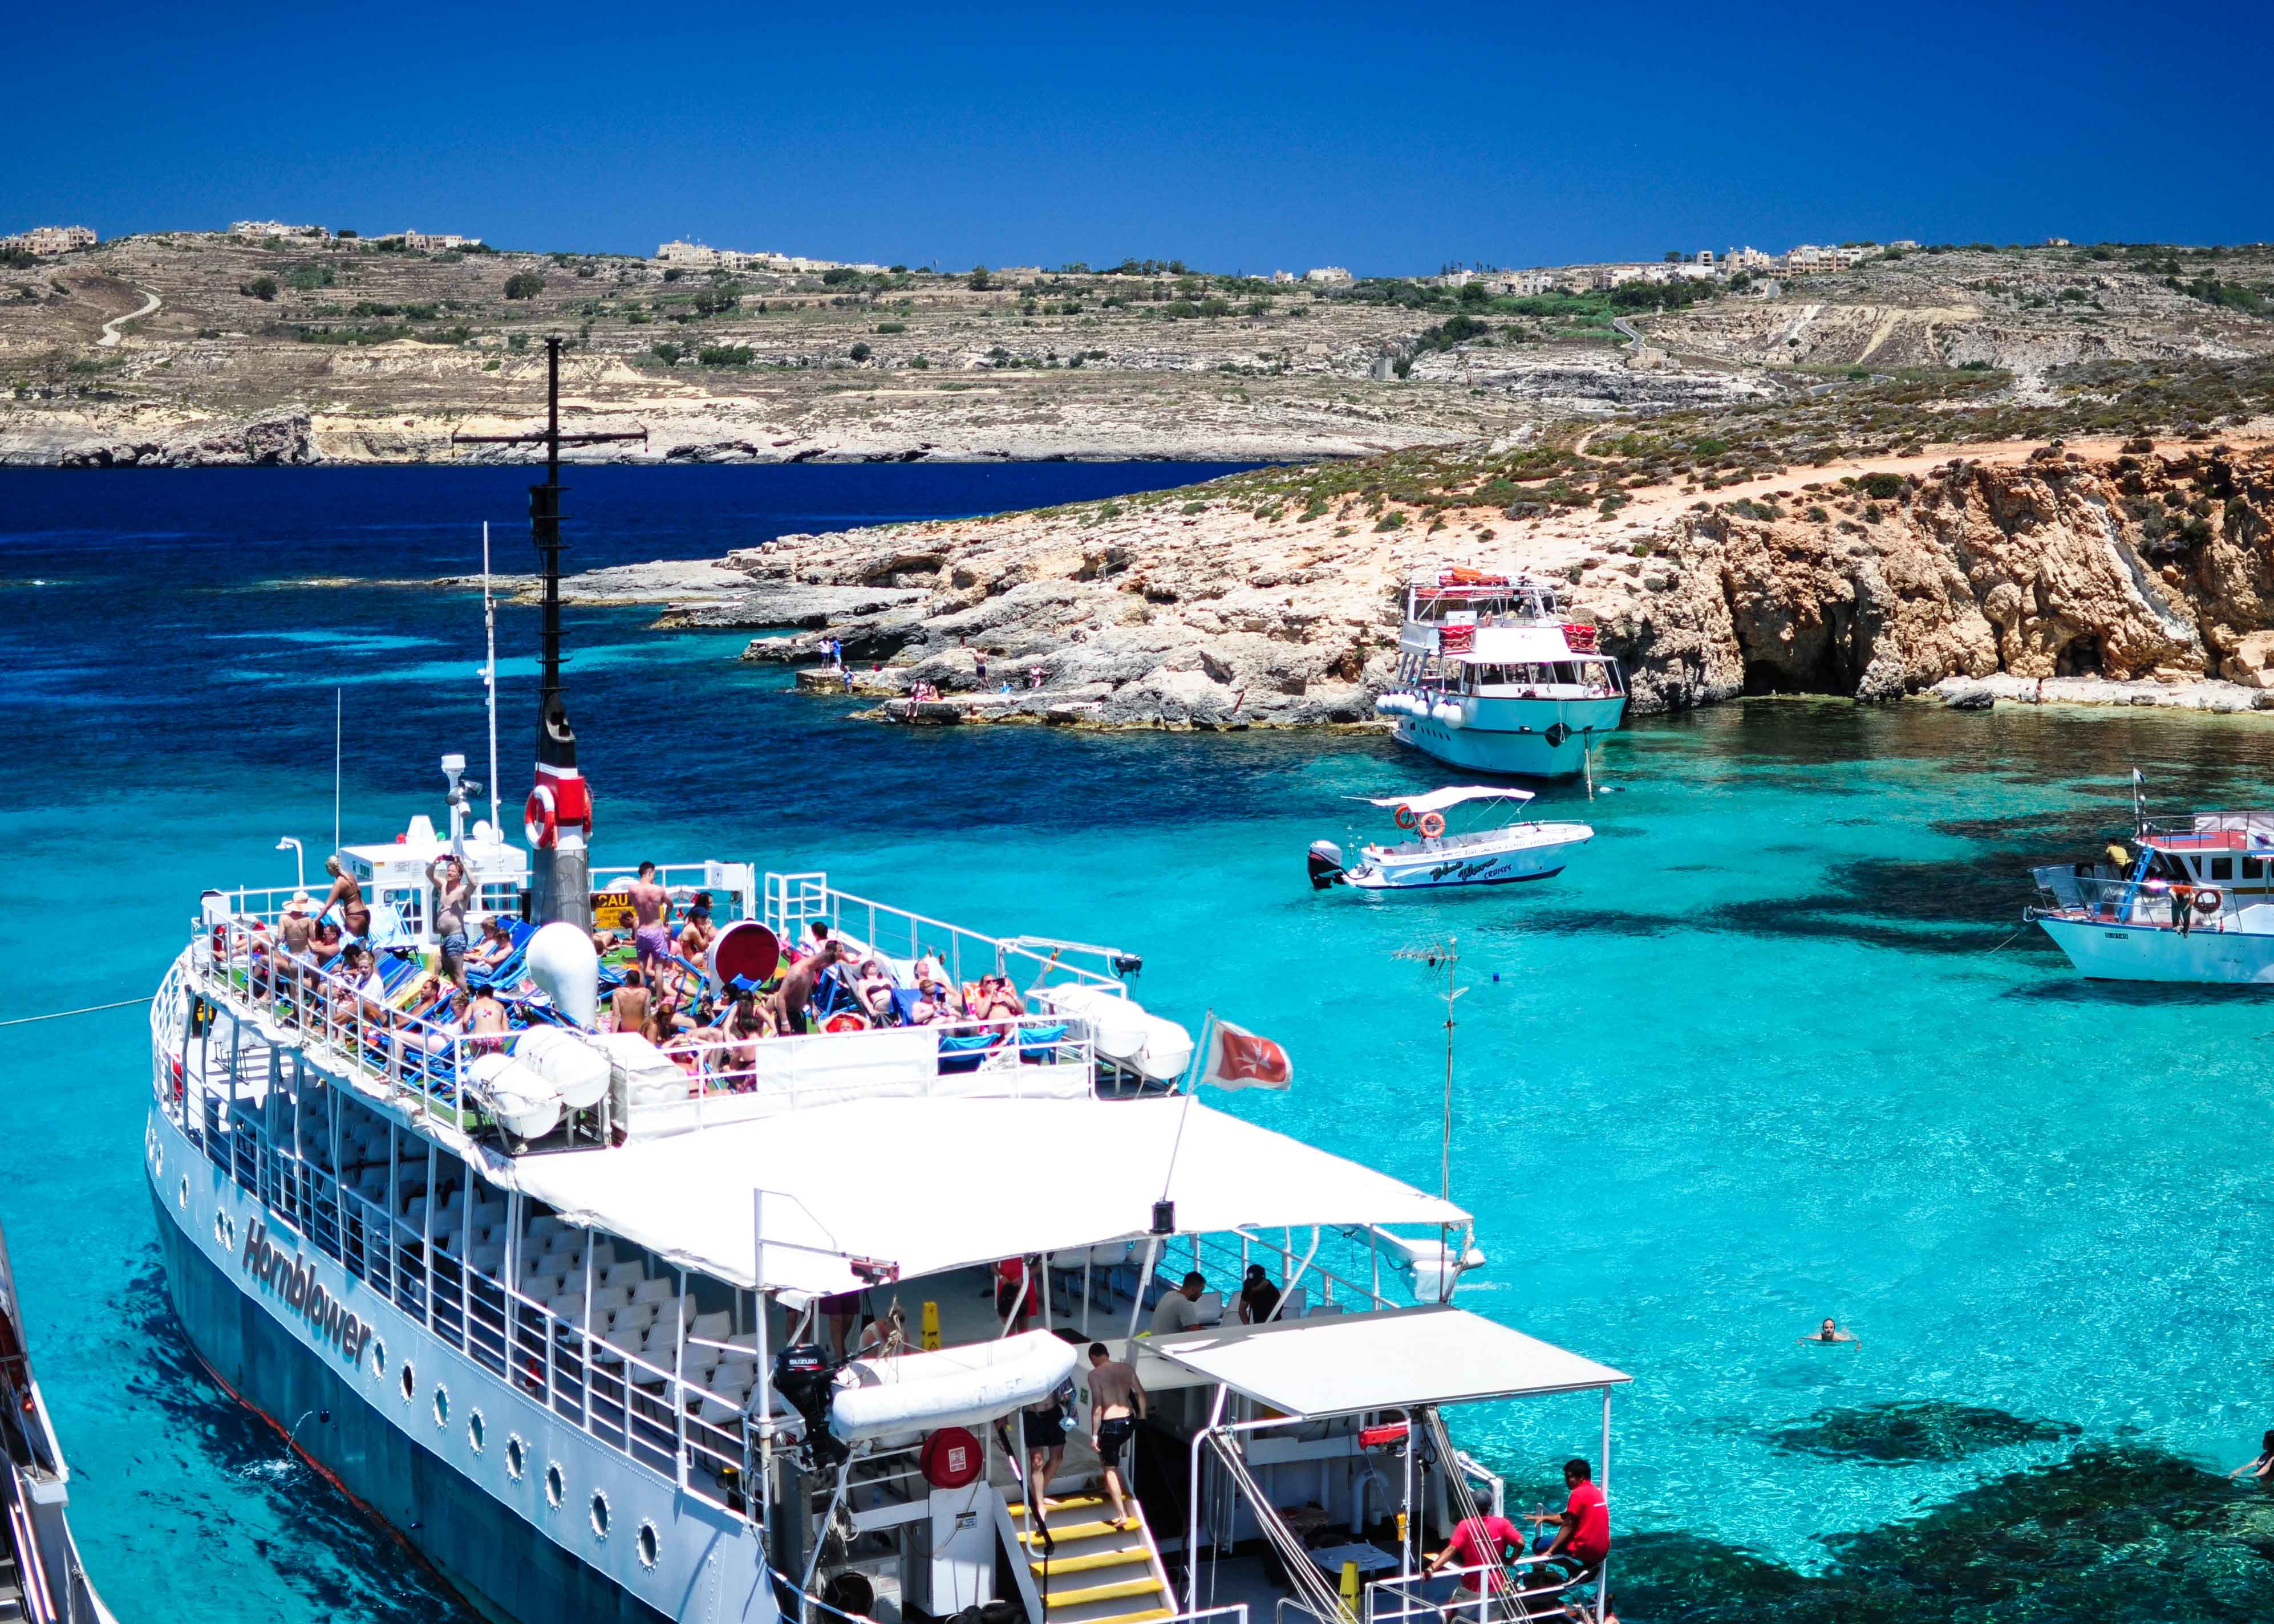 Bãi biển đẹp nhất Malta, Comino đảo, Blue Lagoon